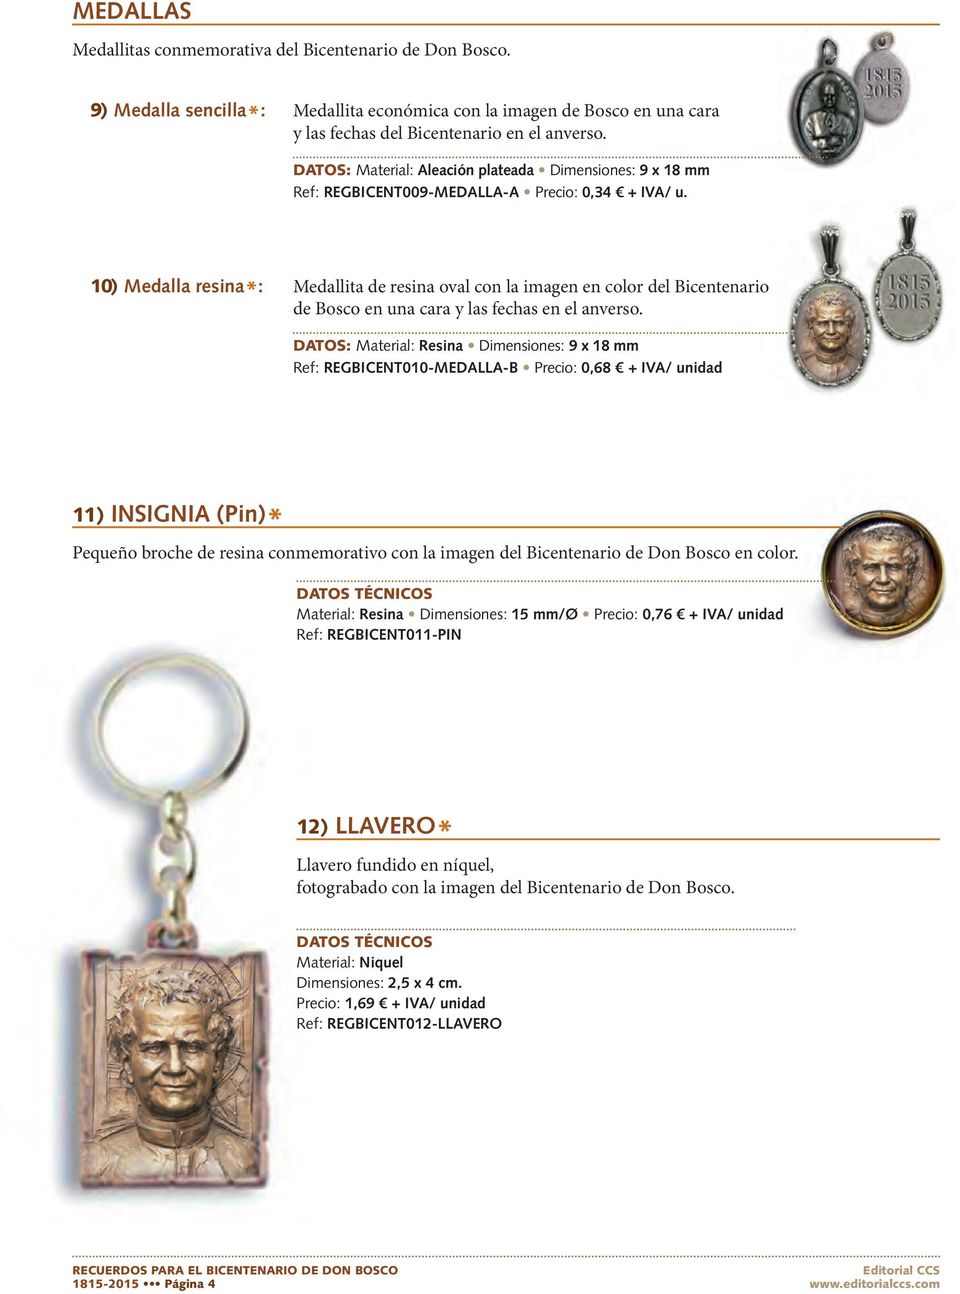 10) Medalla resina *: Medallita de resina oval con la imagen en color del Bicentenario de Bosco en una cara y las fechas en el anverso.